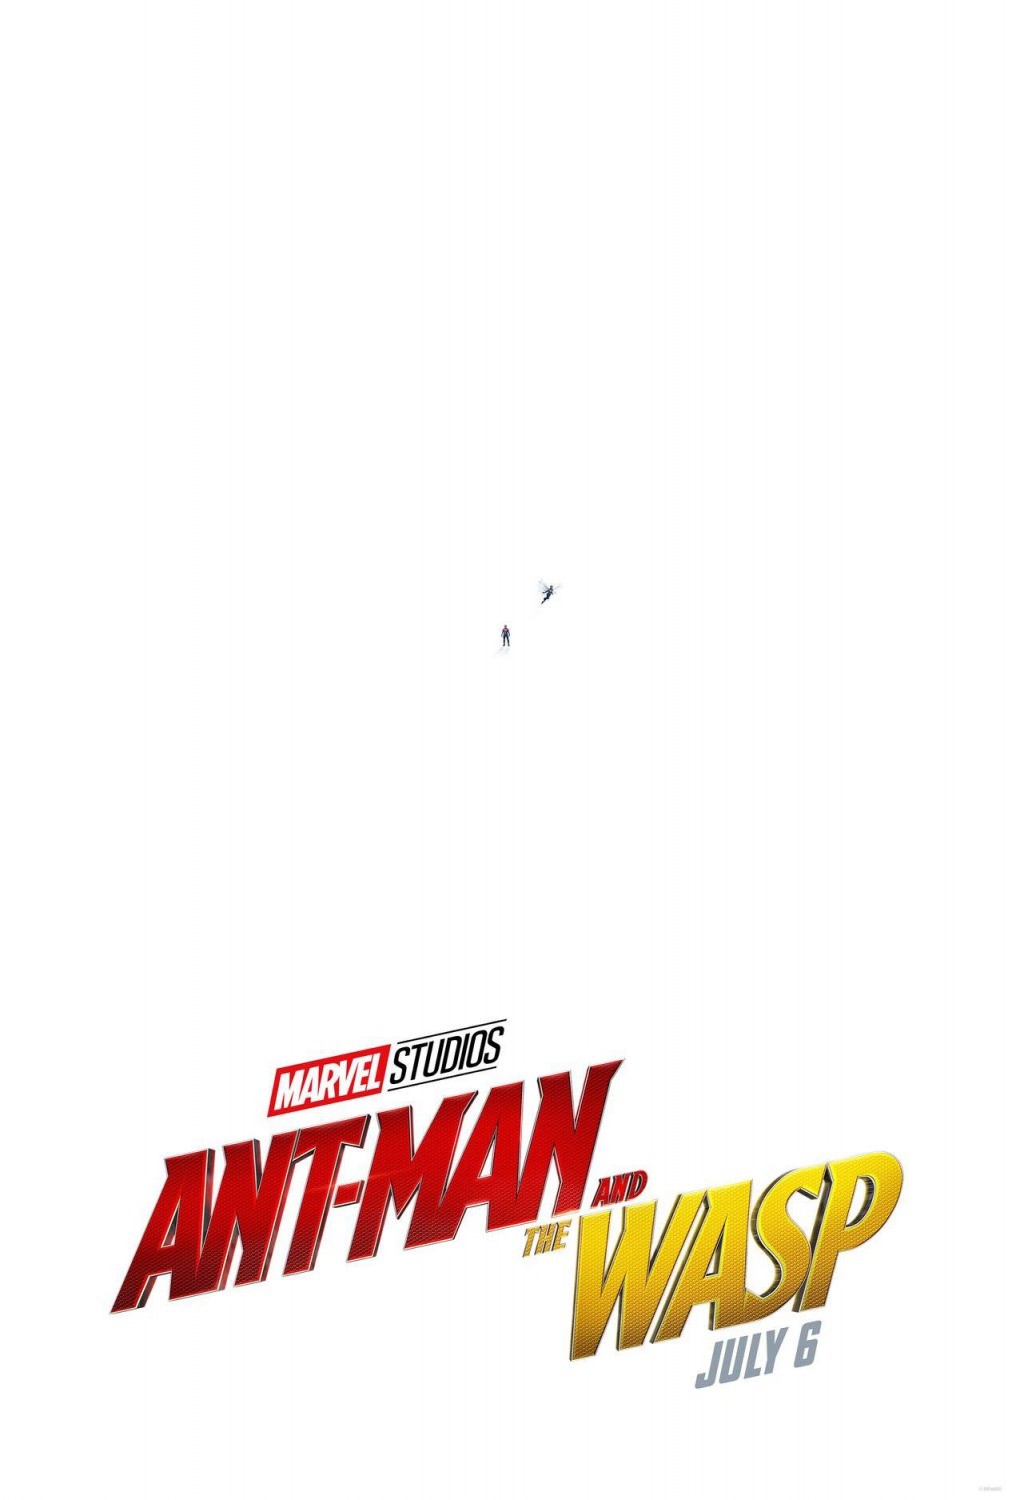 ant-man-and-the-wasp-nuove-immagini-ufficiali-e-dettagli-sulla-trama-di-ant-man-2-2.jpg